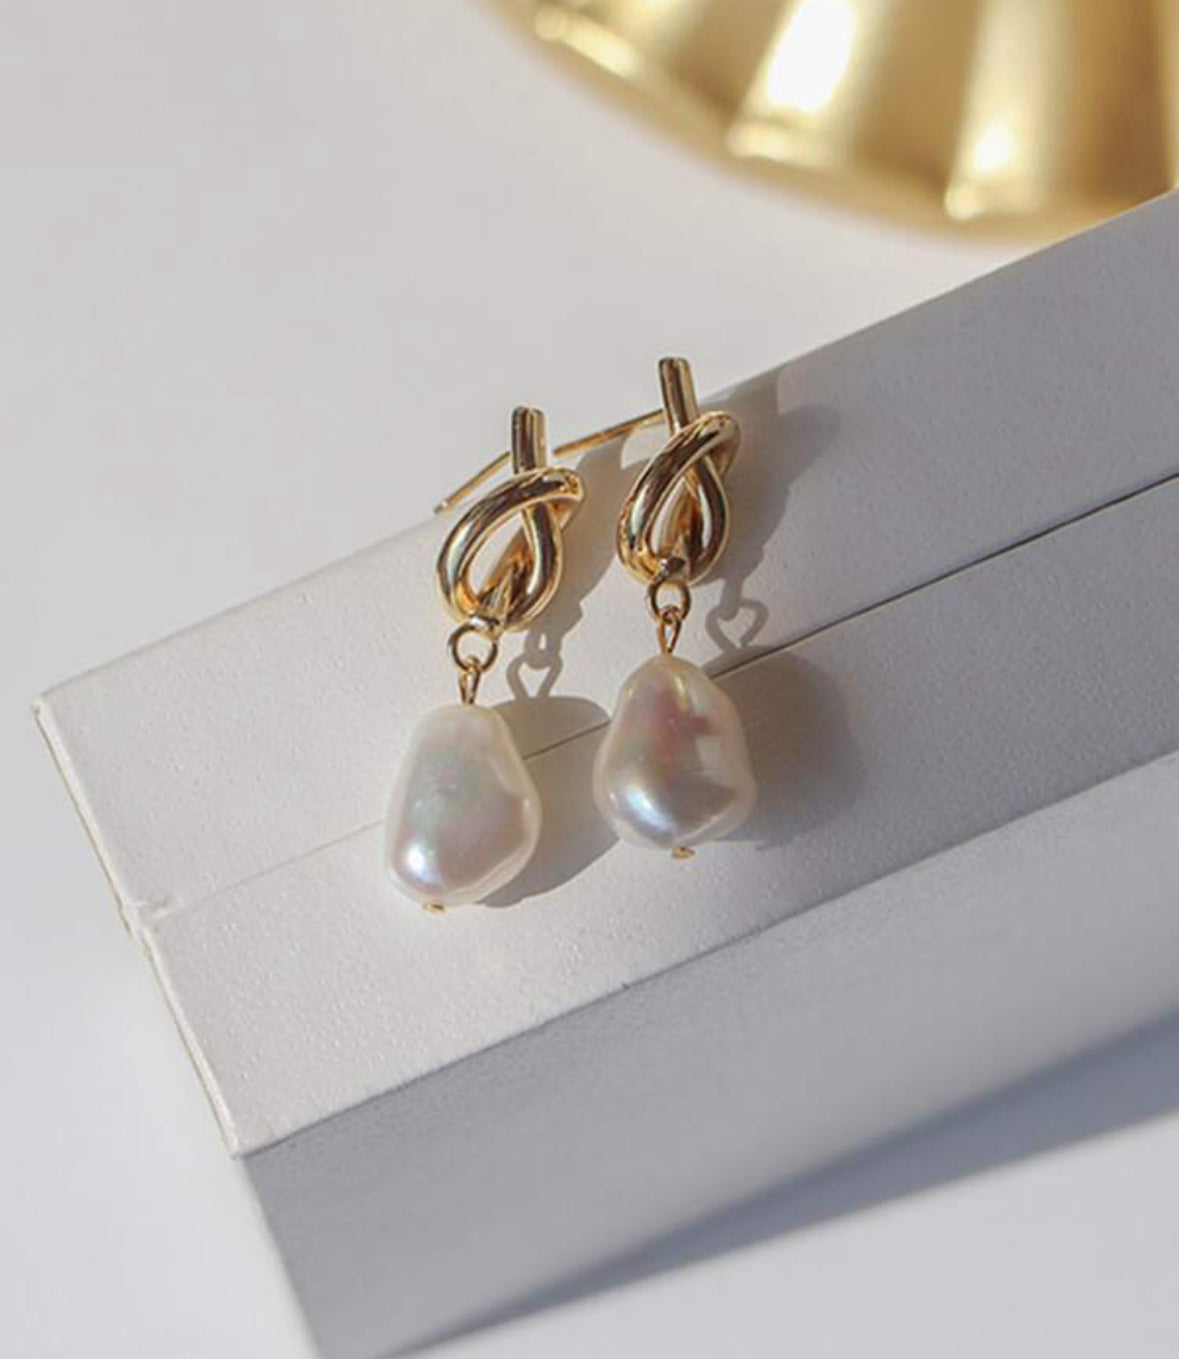 Beautiful pearl drop earrings